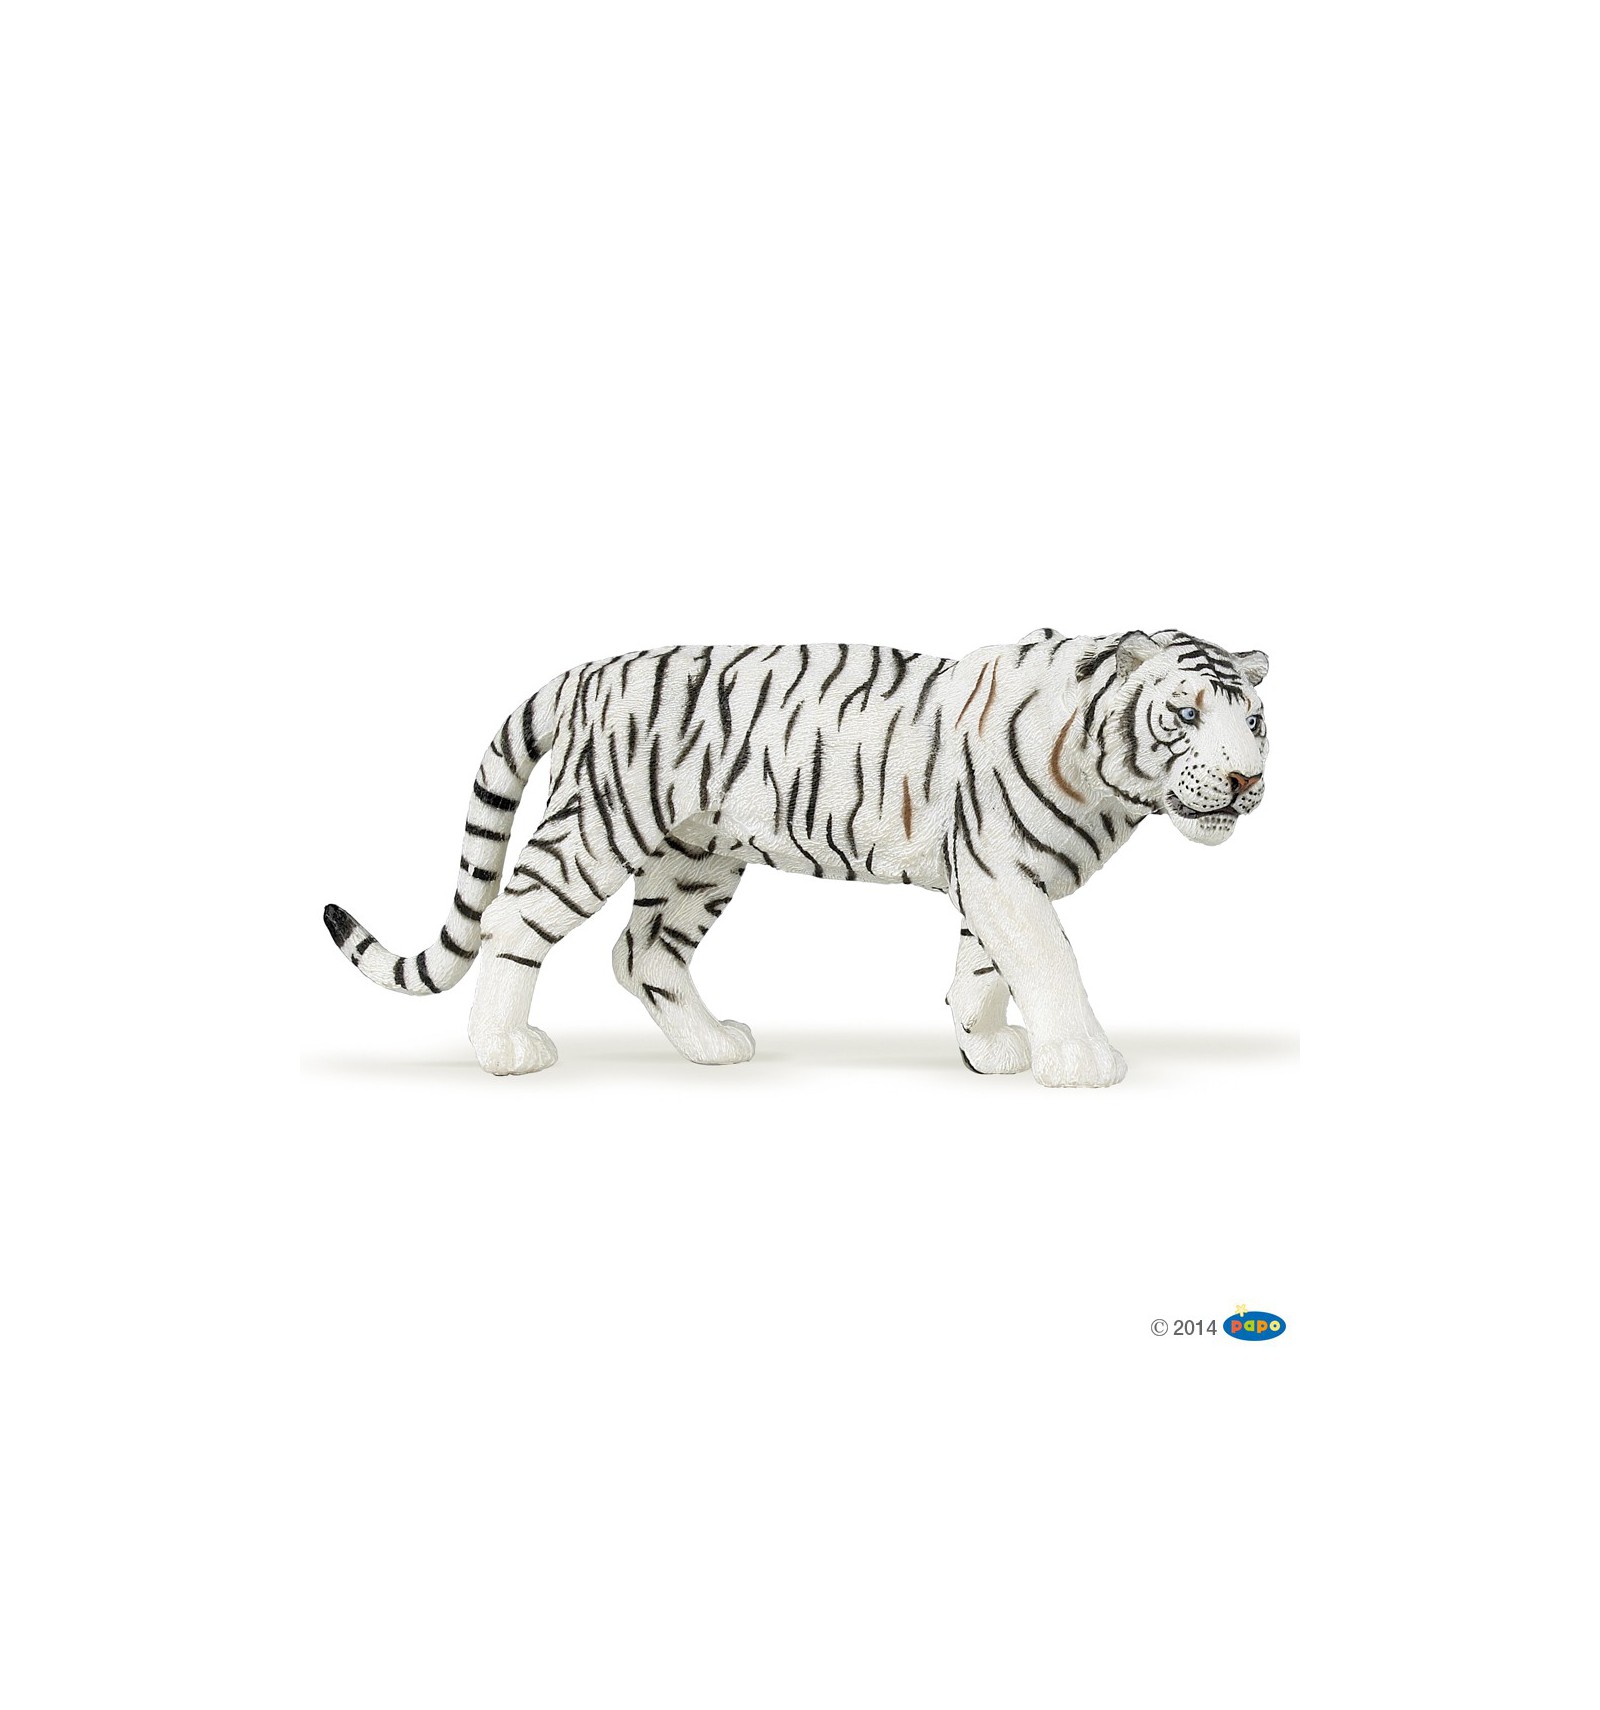 Tigre blanc en PVC 6.2 pouces, figurine réaliste du Zoo, animaux